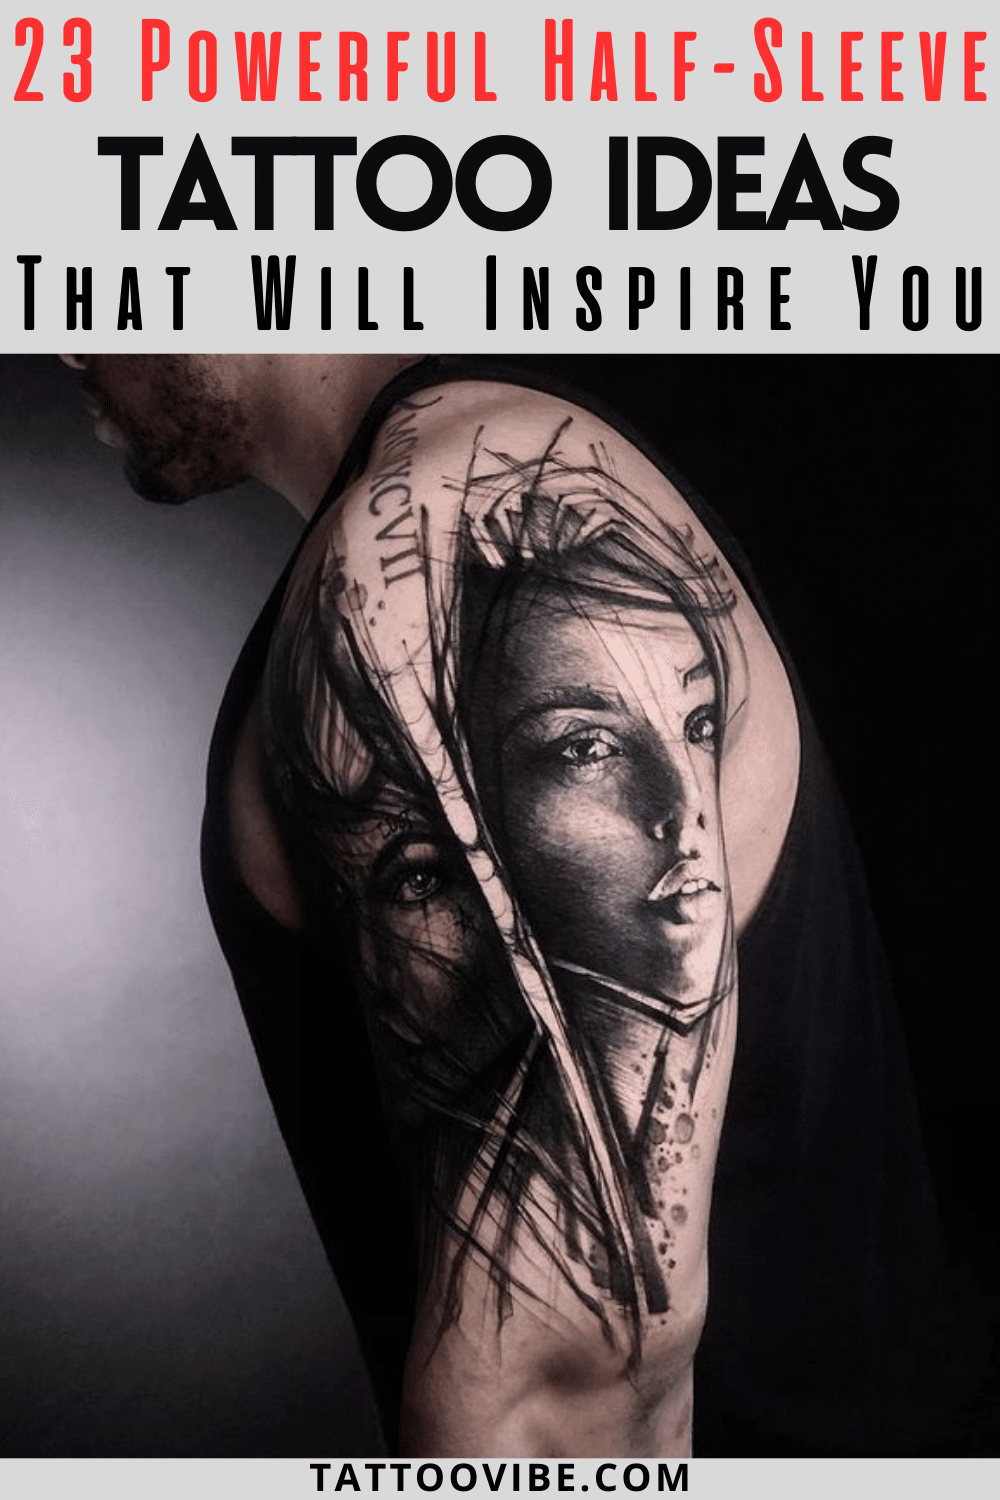 23 ideias poderosas de tatuagens de meia-manga que o vão inspirar